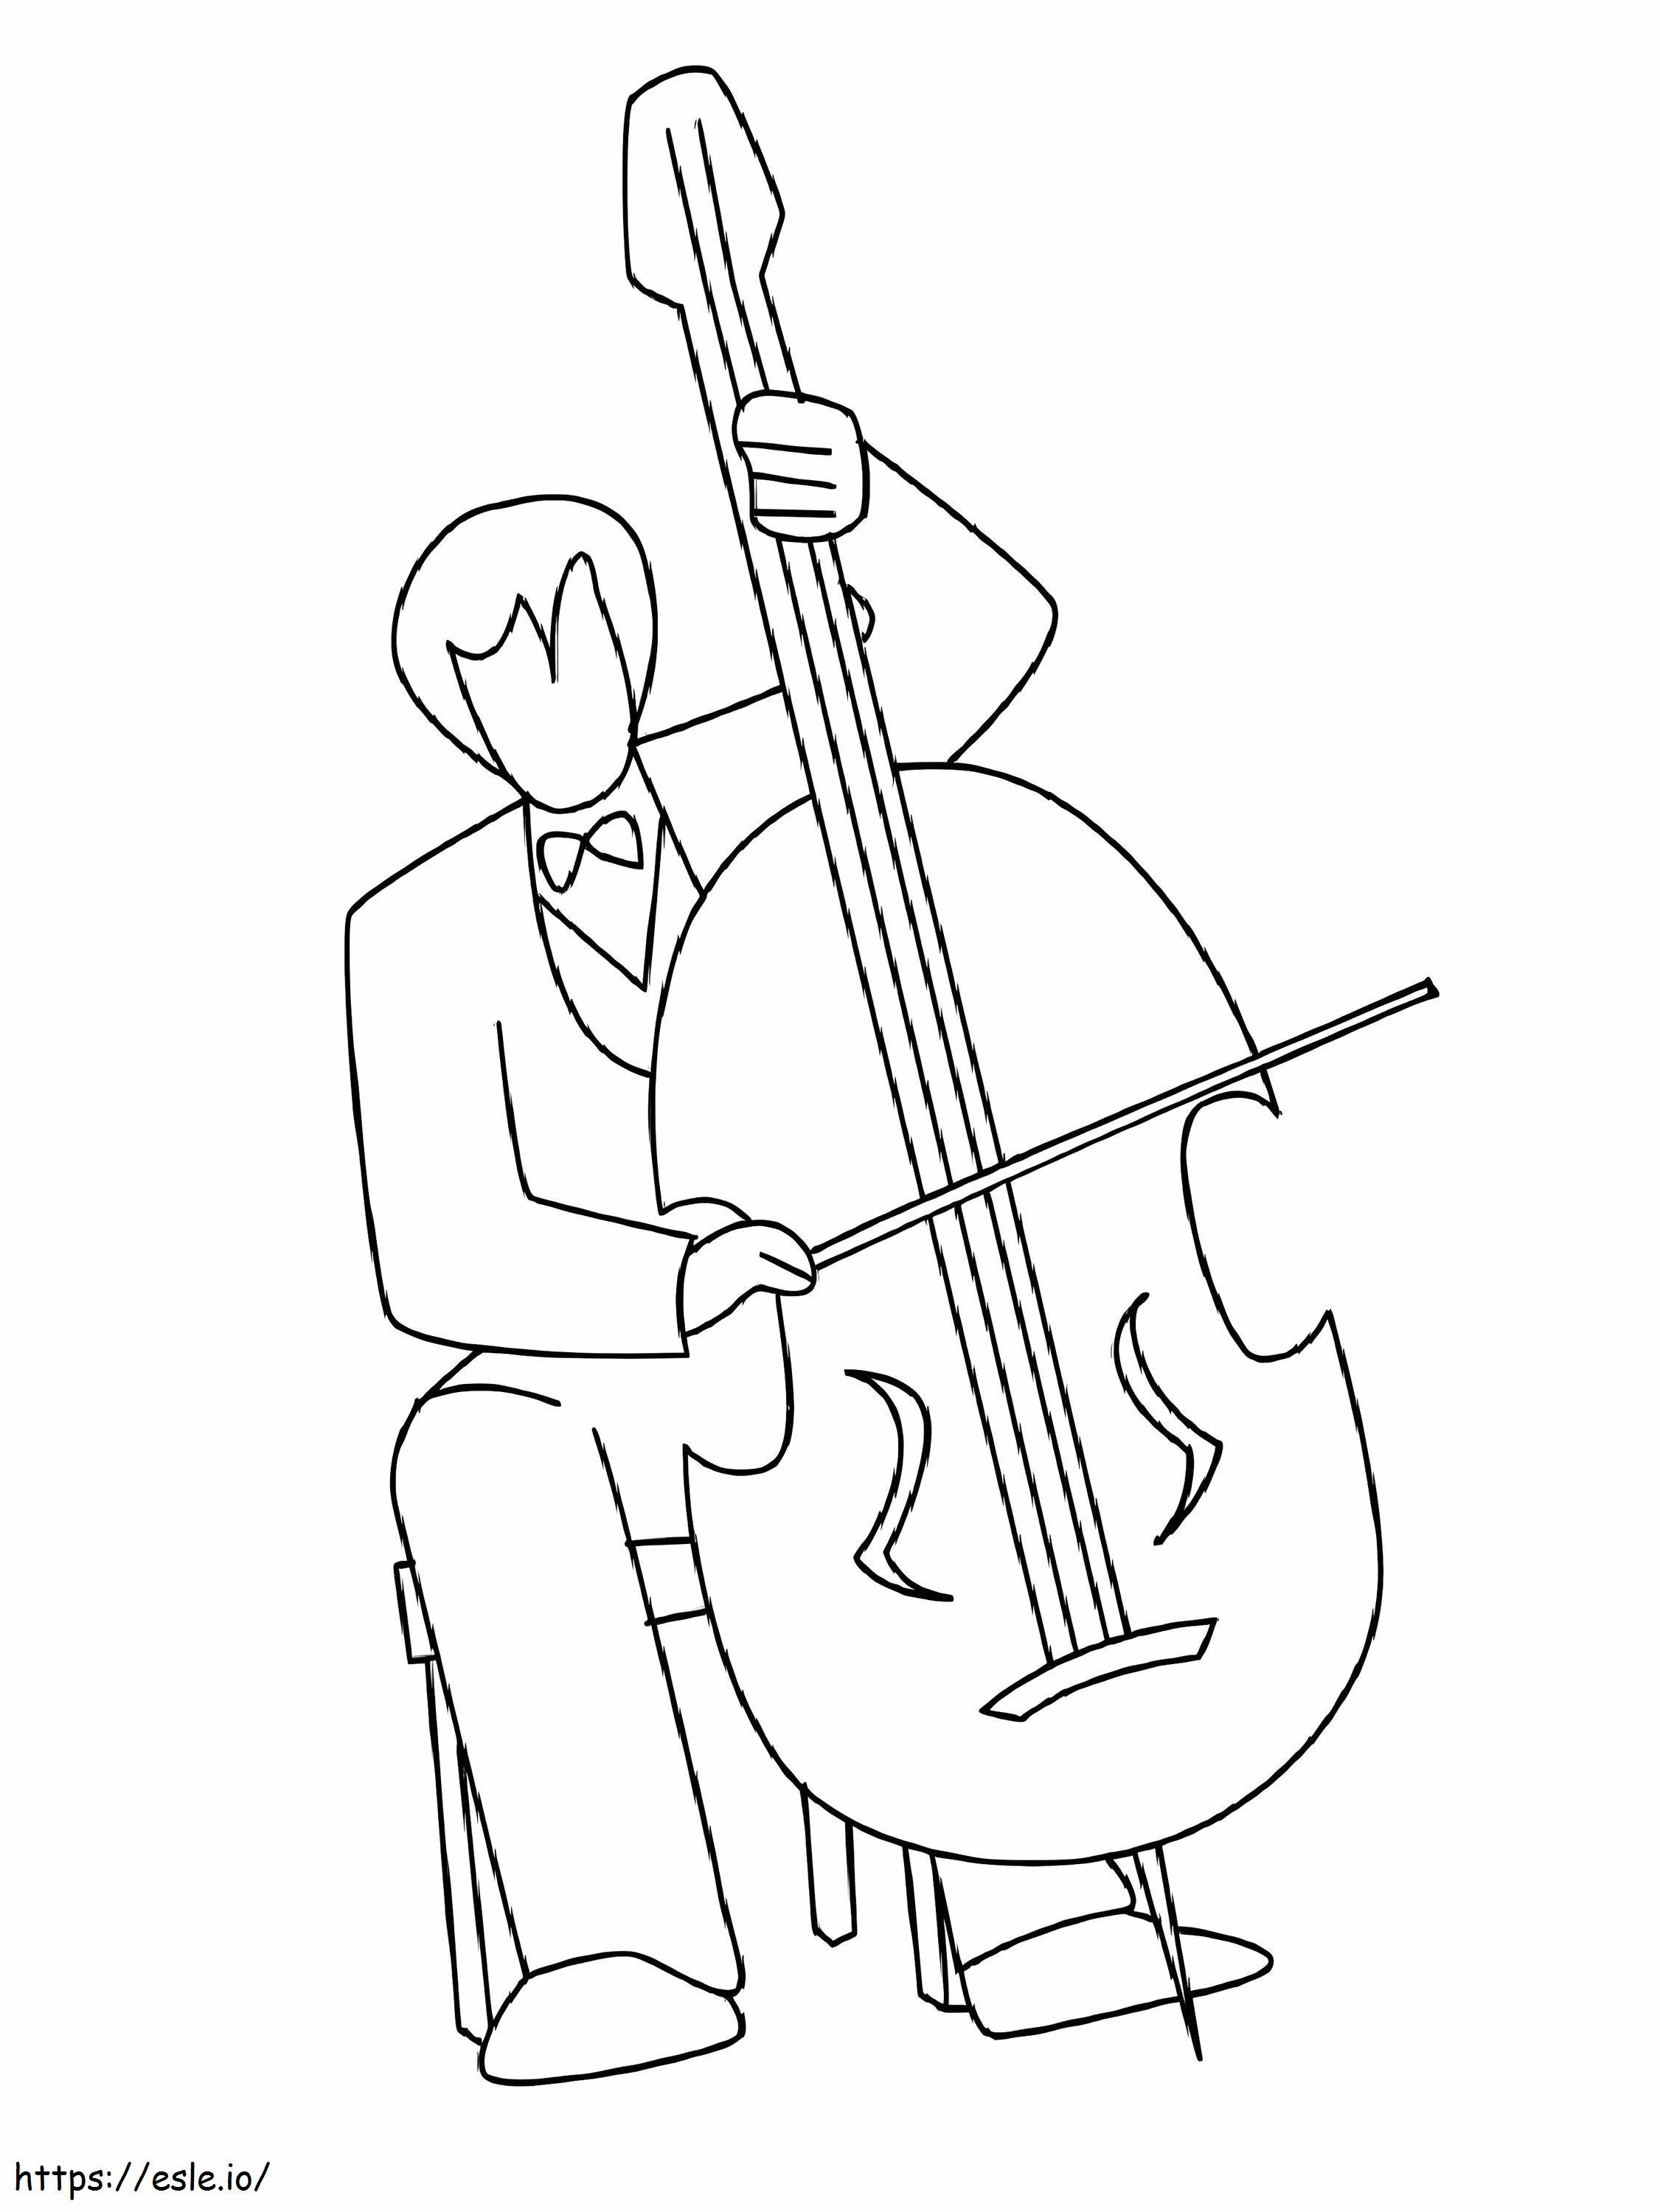 Suonare il violoncello da colorare